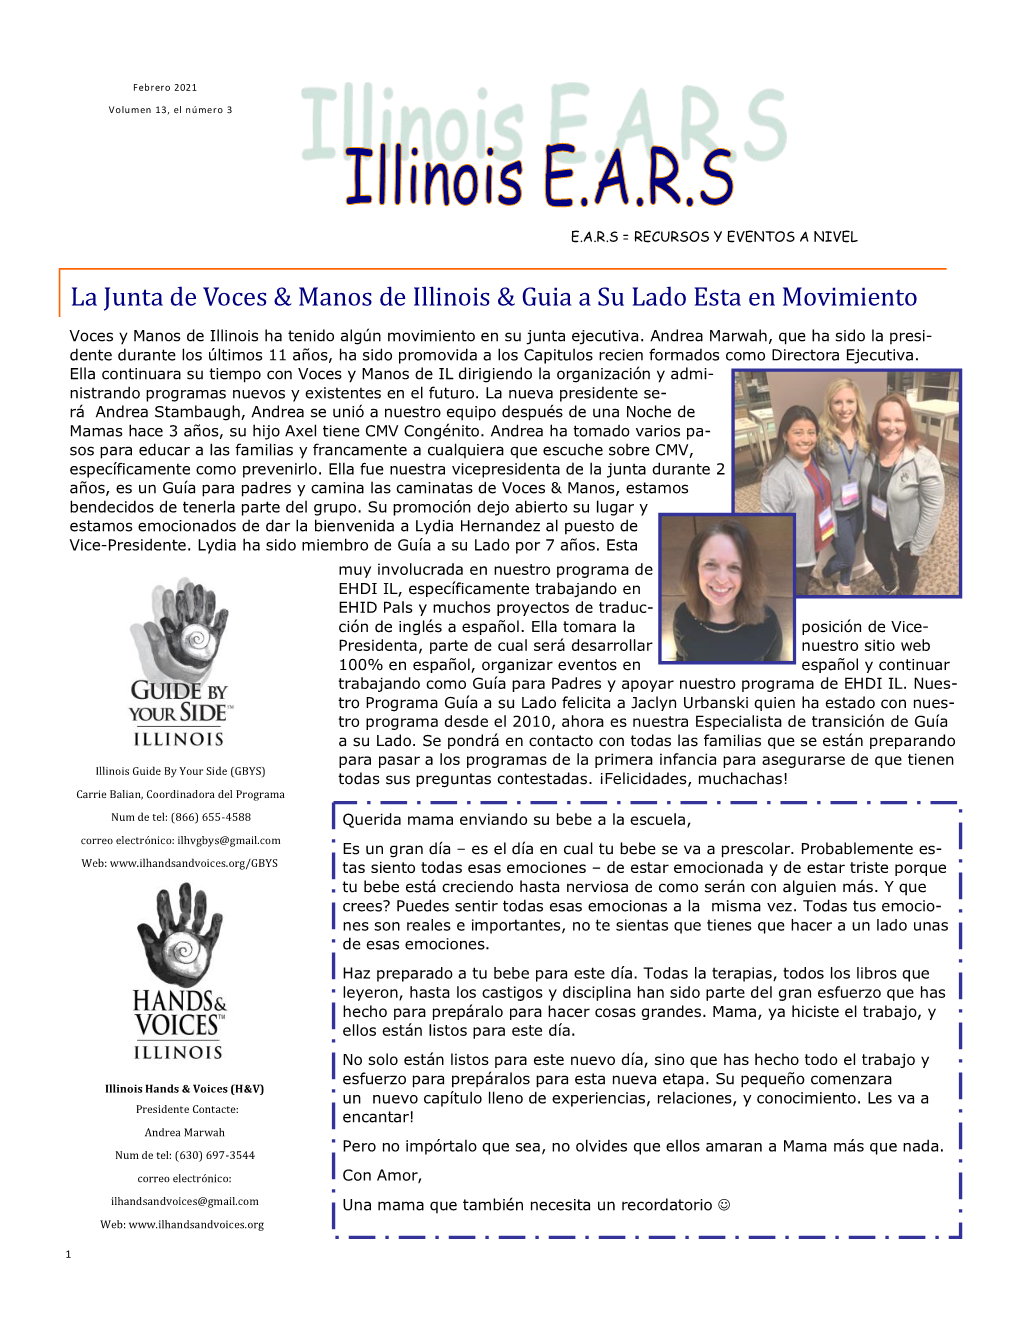 La Junta De Voces & Manos De Illinois & Guia a Su Lado Esta En Movimiento